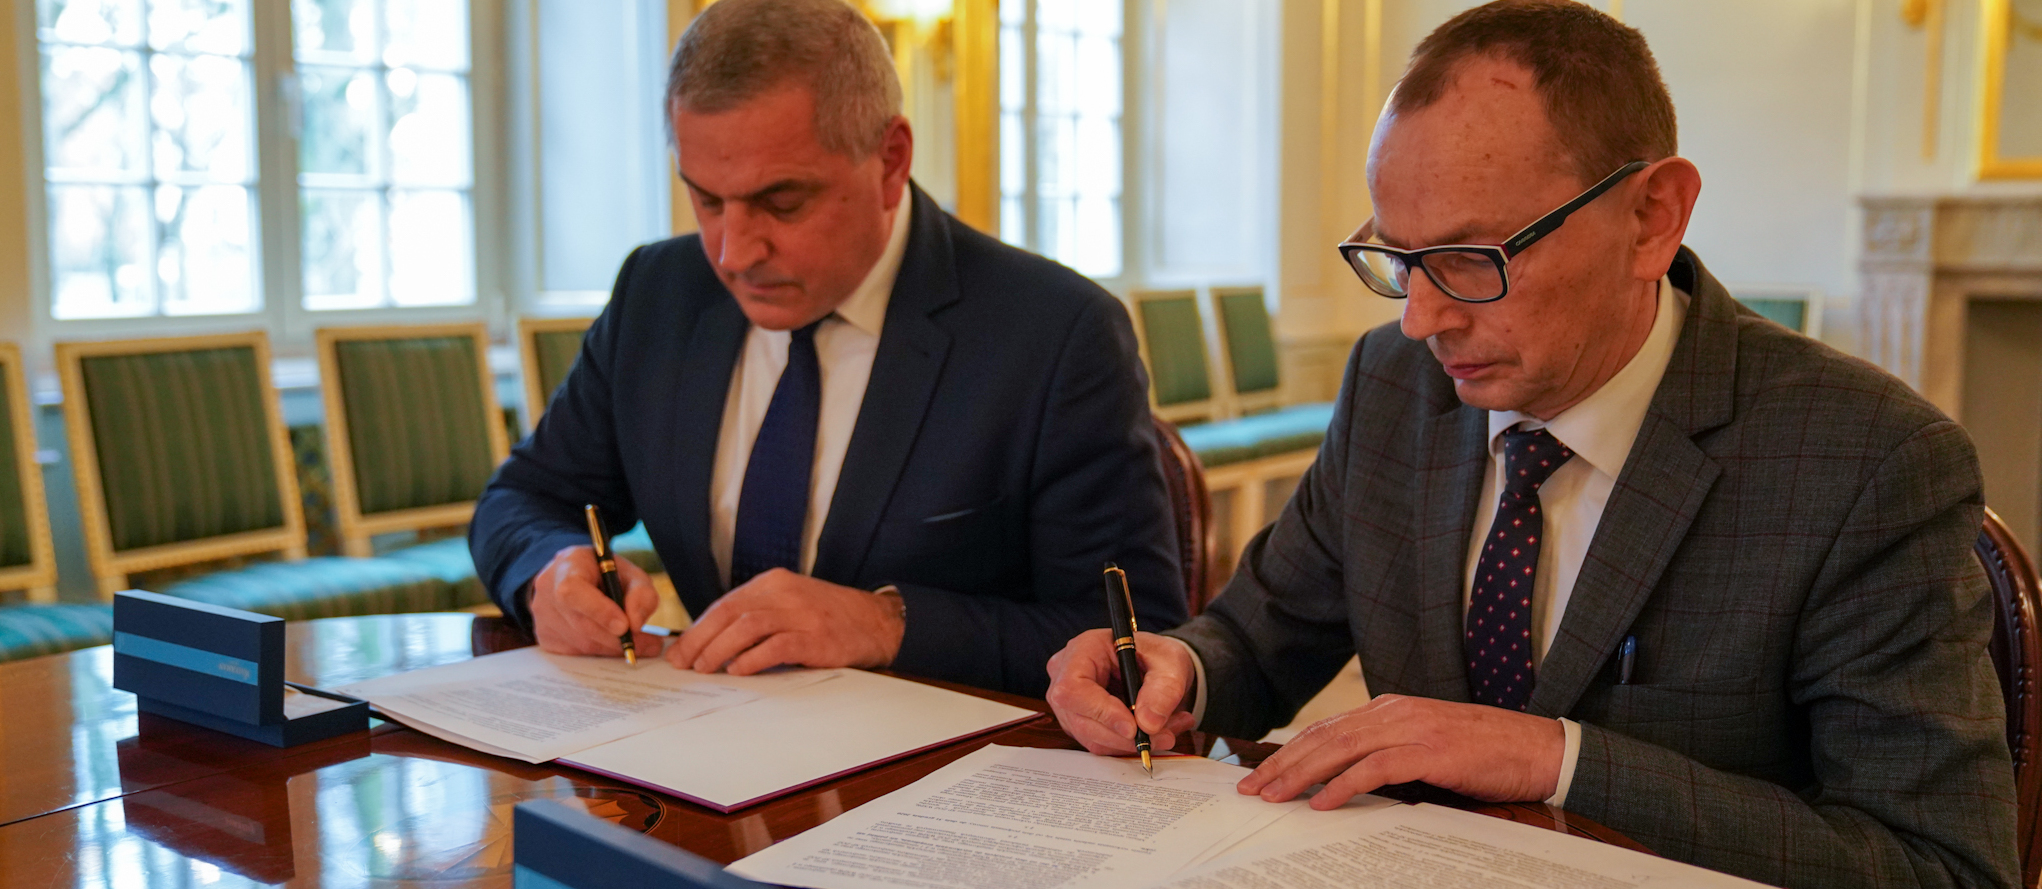 Zastępca prezydenta Zbigniew NIkitorowicz i dyrektor pogotowia ratunkowego podpisują umowę